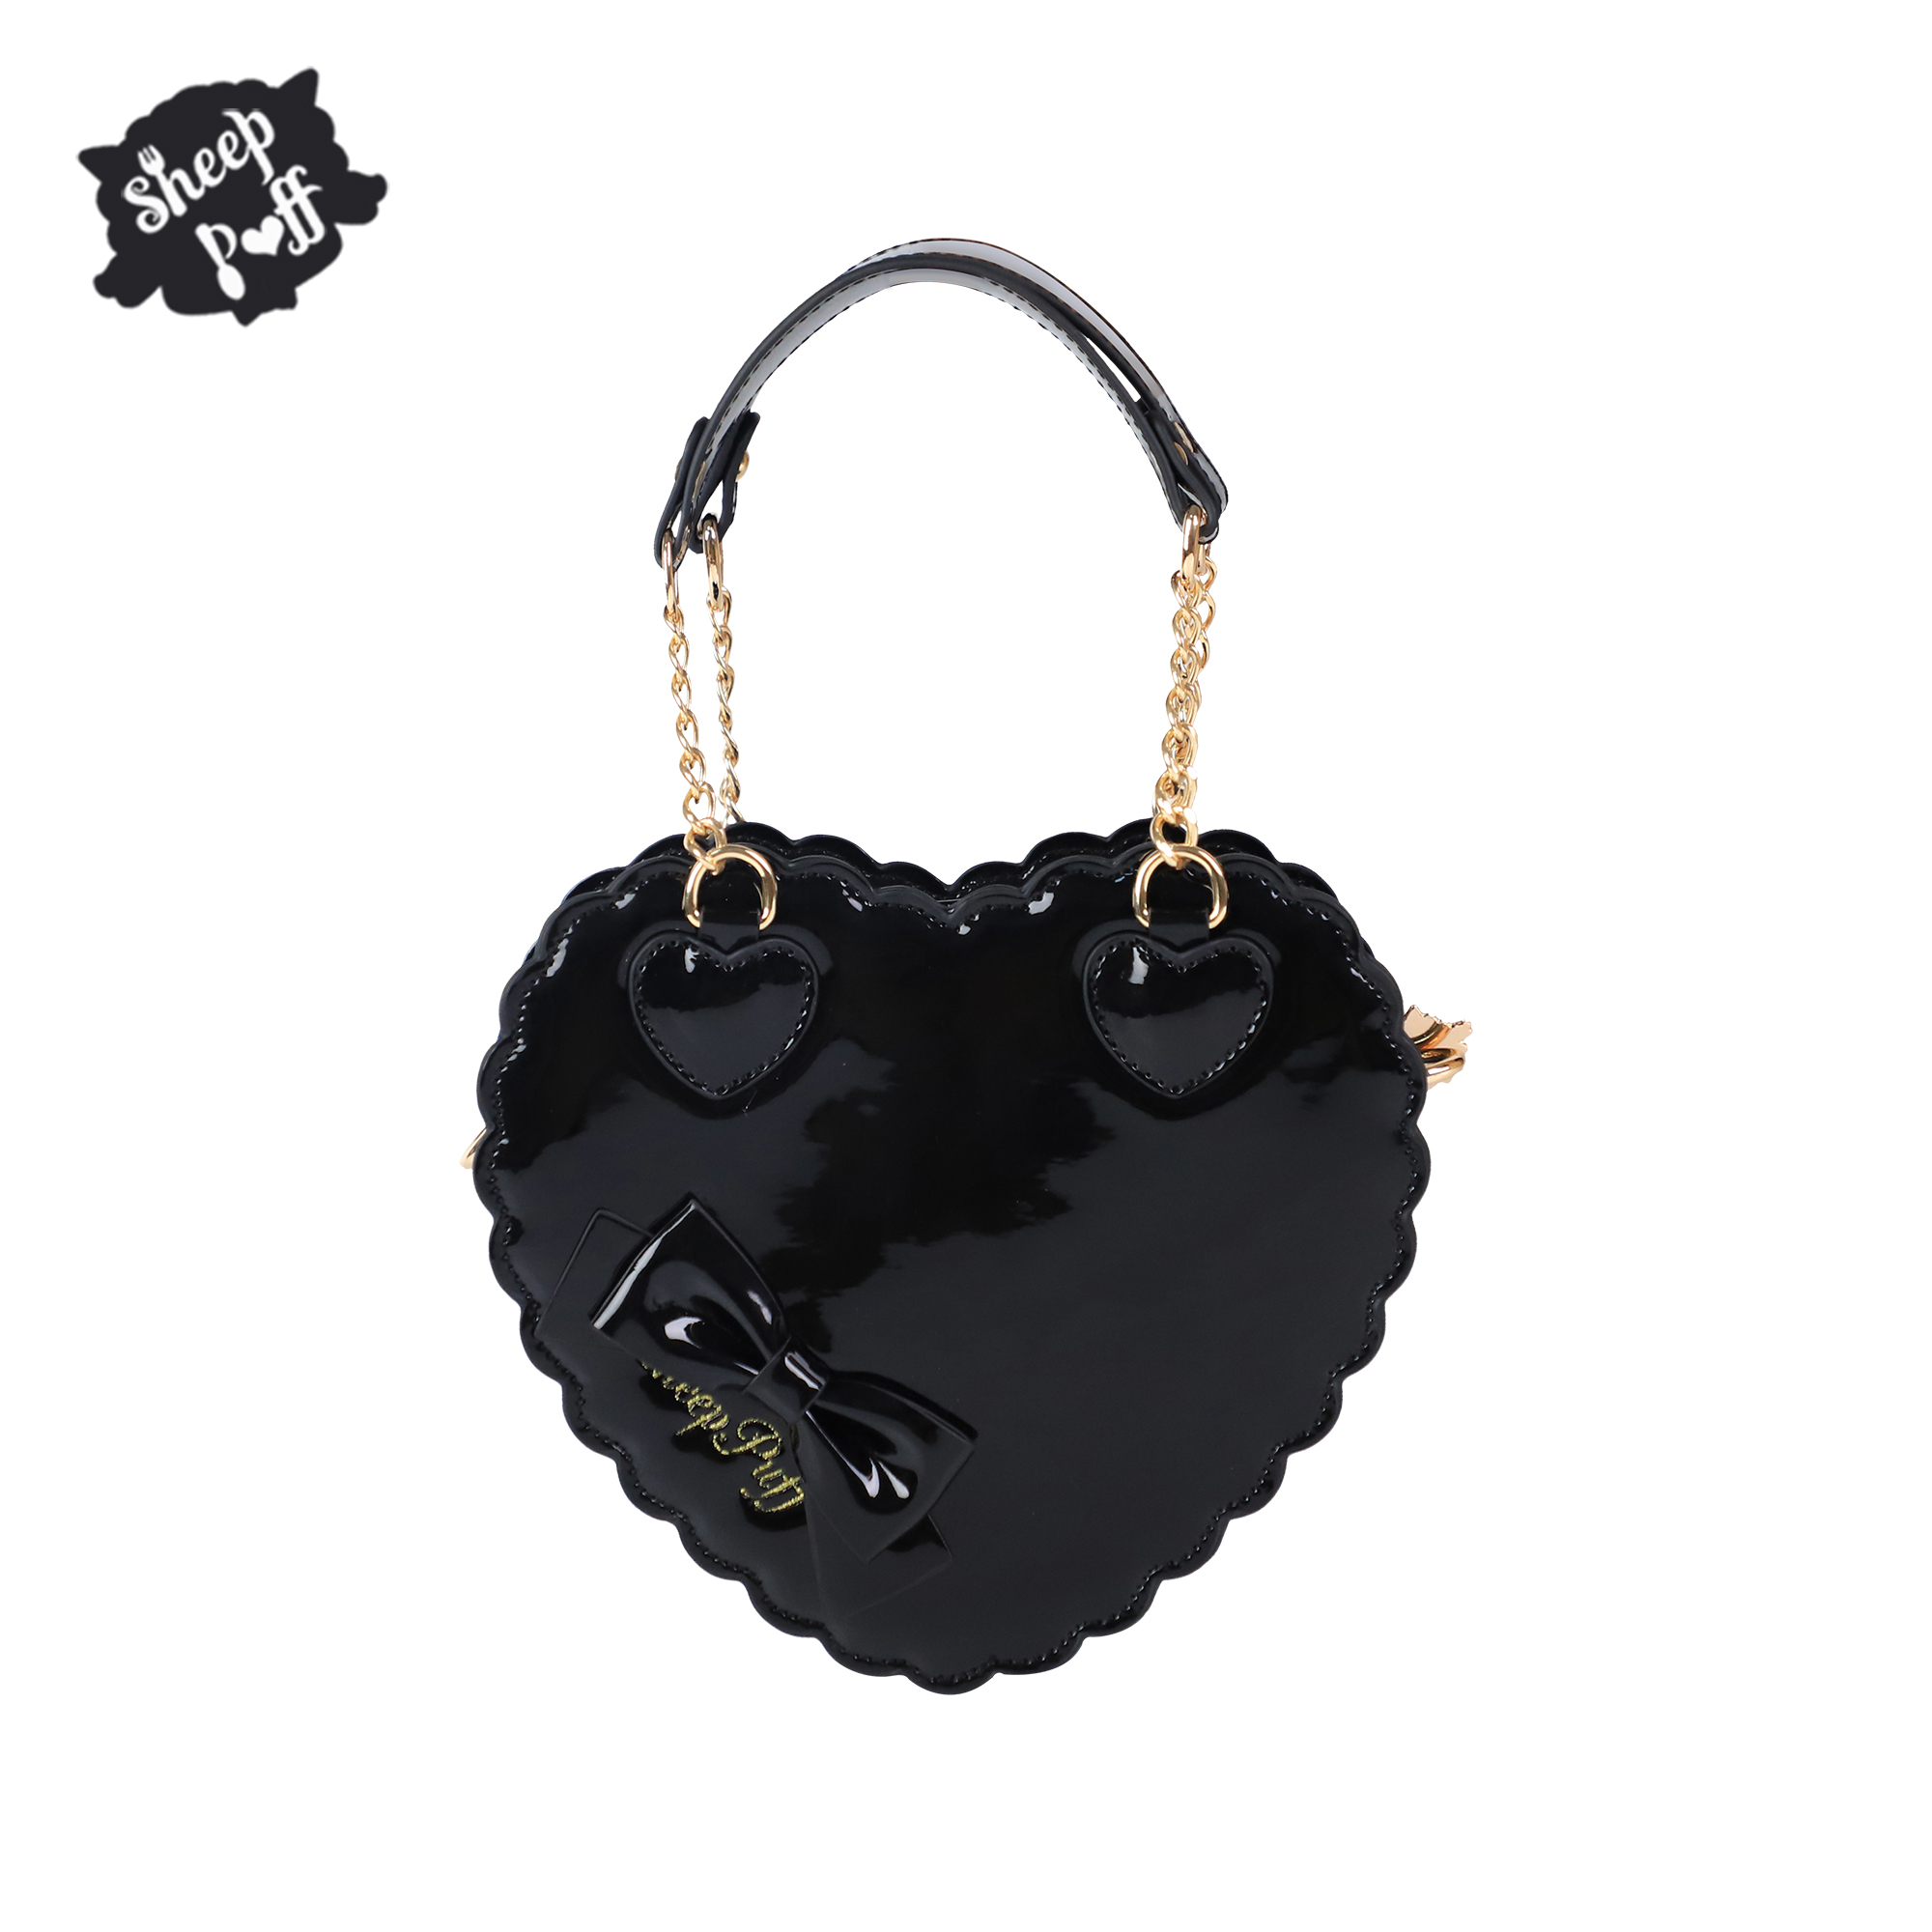 Black【 Balance 】 trumpet Biscuits Love bag original Inclined shoulder bag Lolita female portable solar system bow Female bag